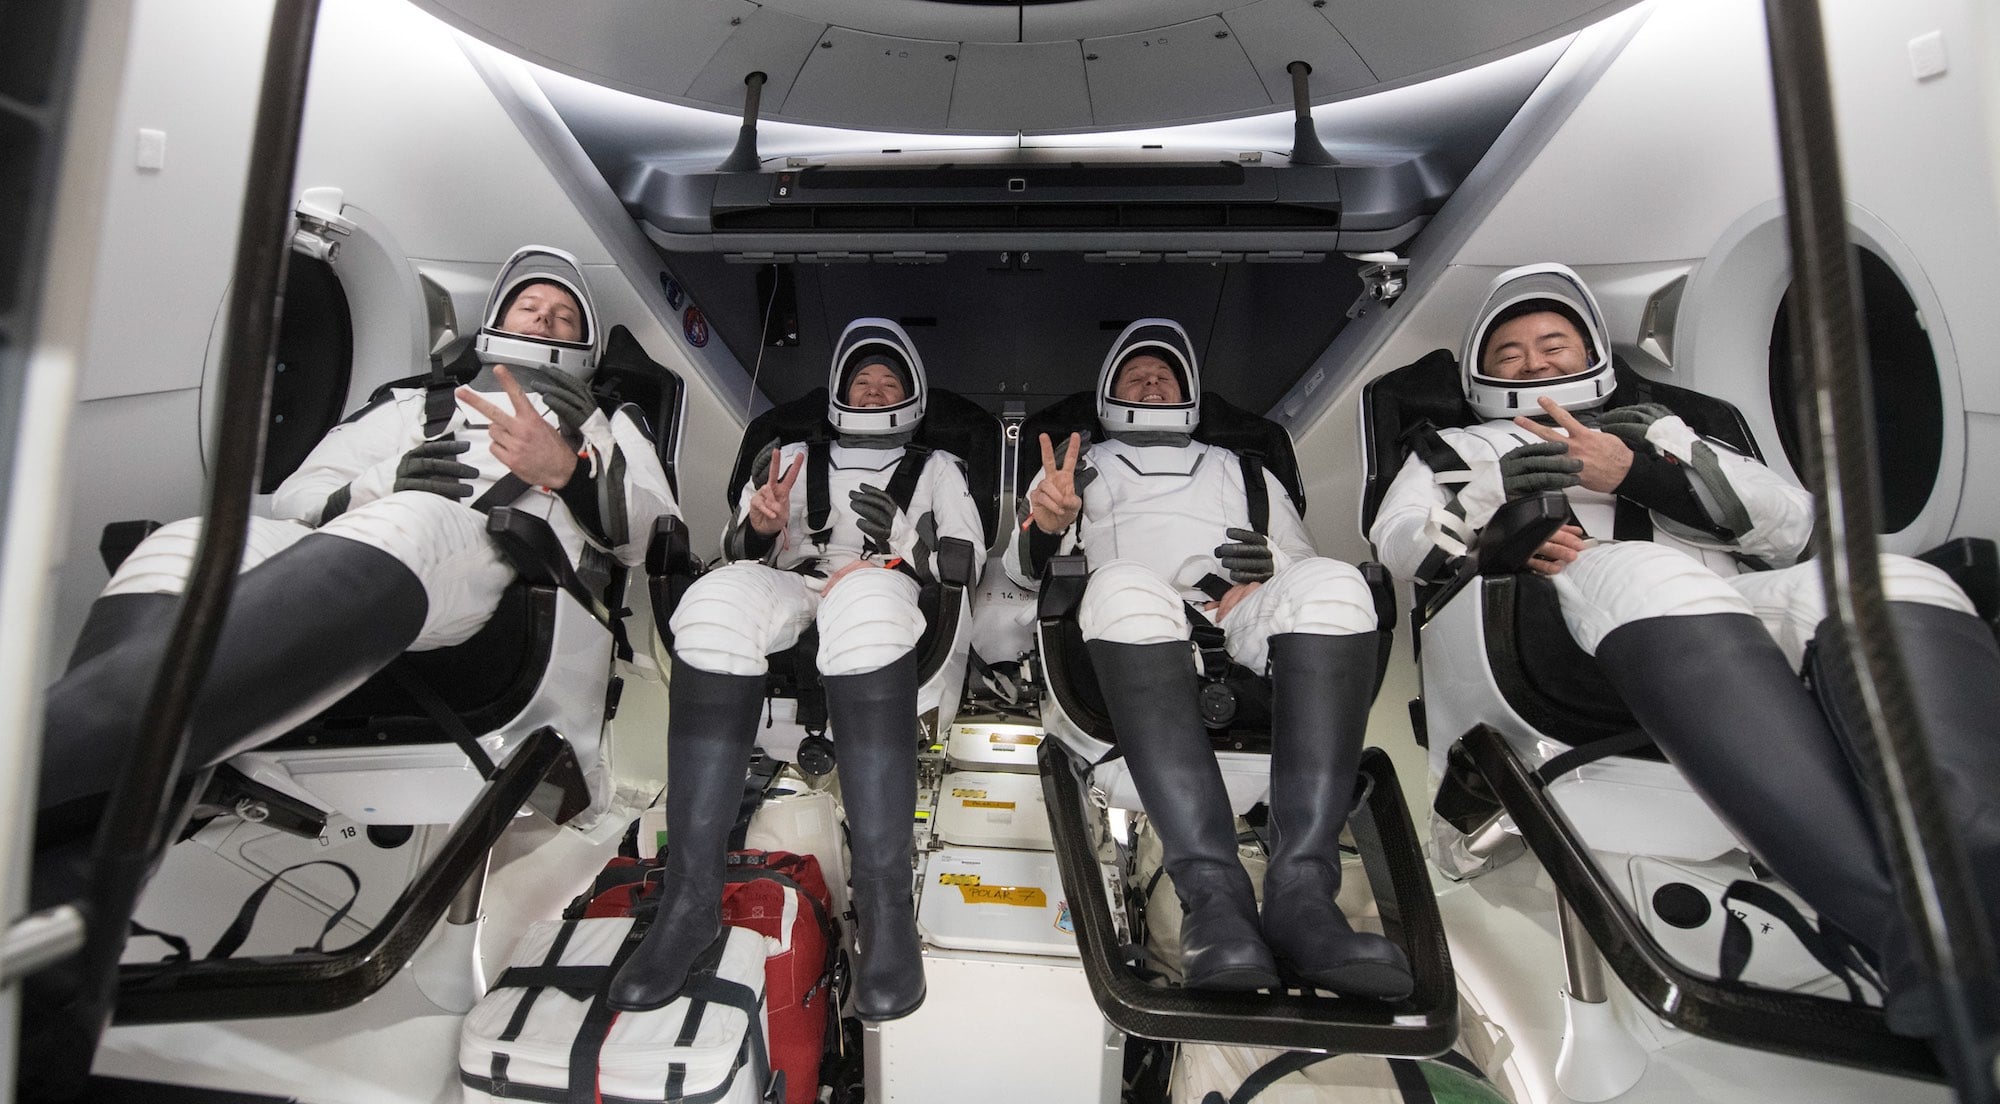 De gauche à droite : Thomas Pesquet, Megan McArthur, Shane Kimbrough et Akihiko Hoshide à bord de la capsule Crew Dragon, pris en photo peu après leur amerrissage par les équipes de récupération.<br /> Crédit : NASA/Aubrey Gemignani